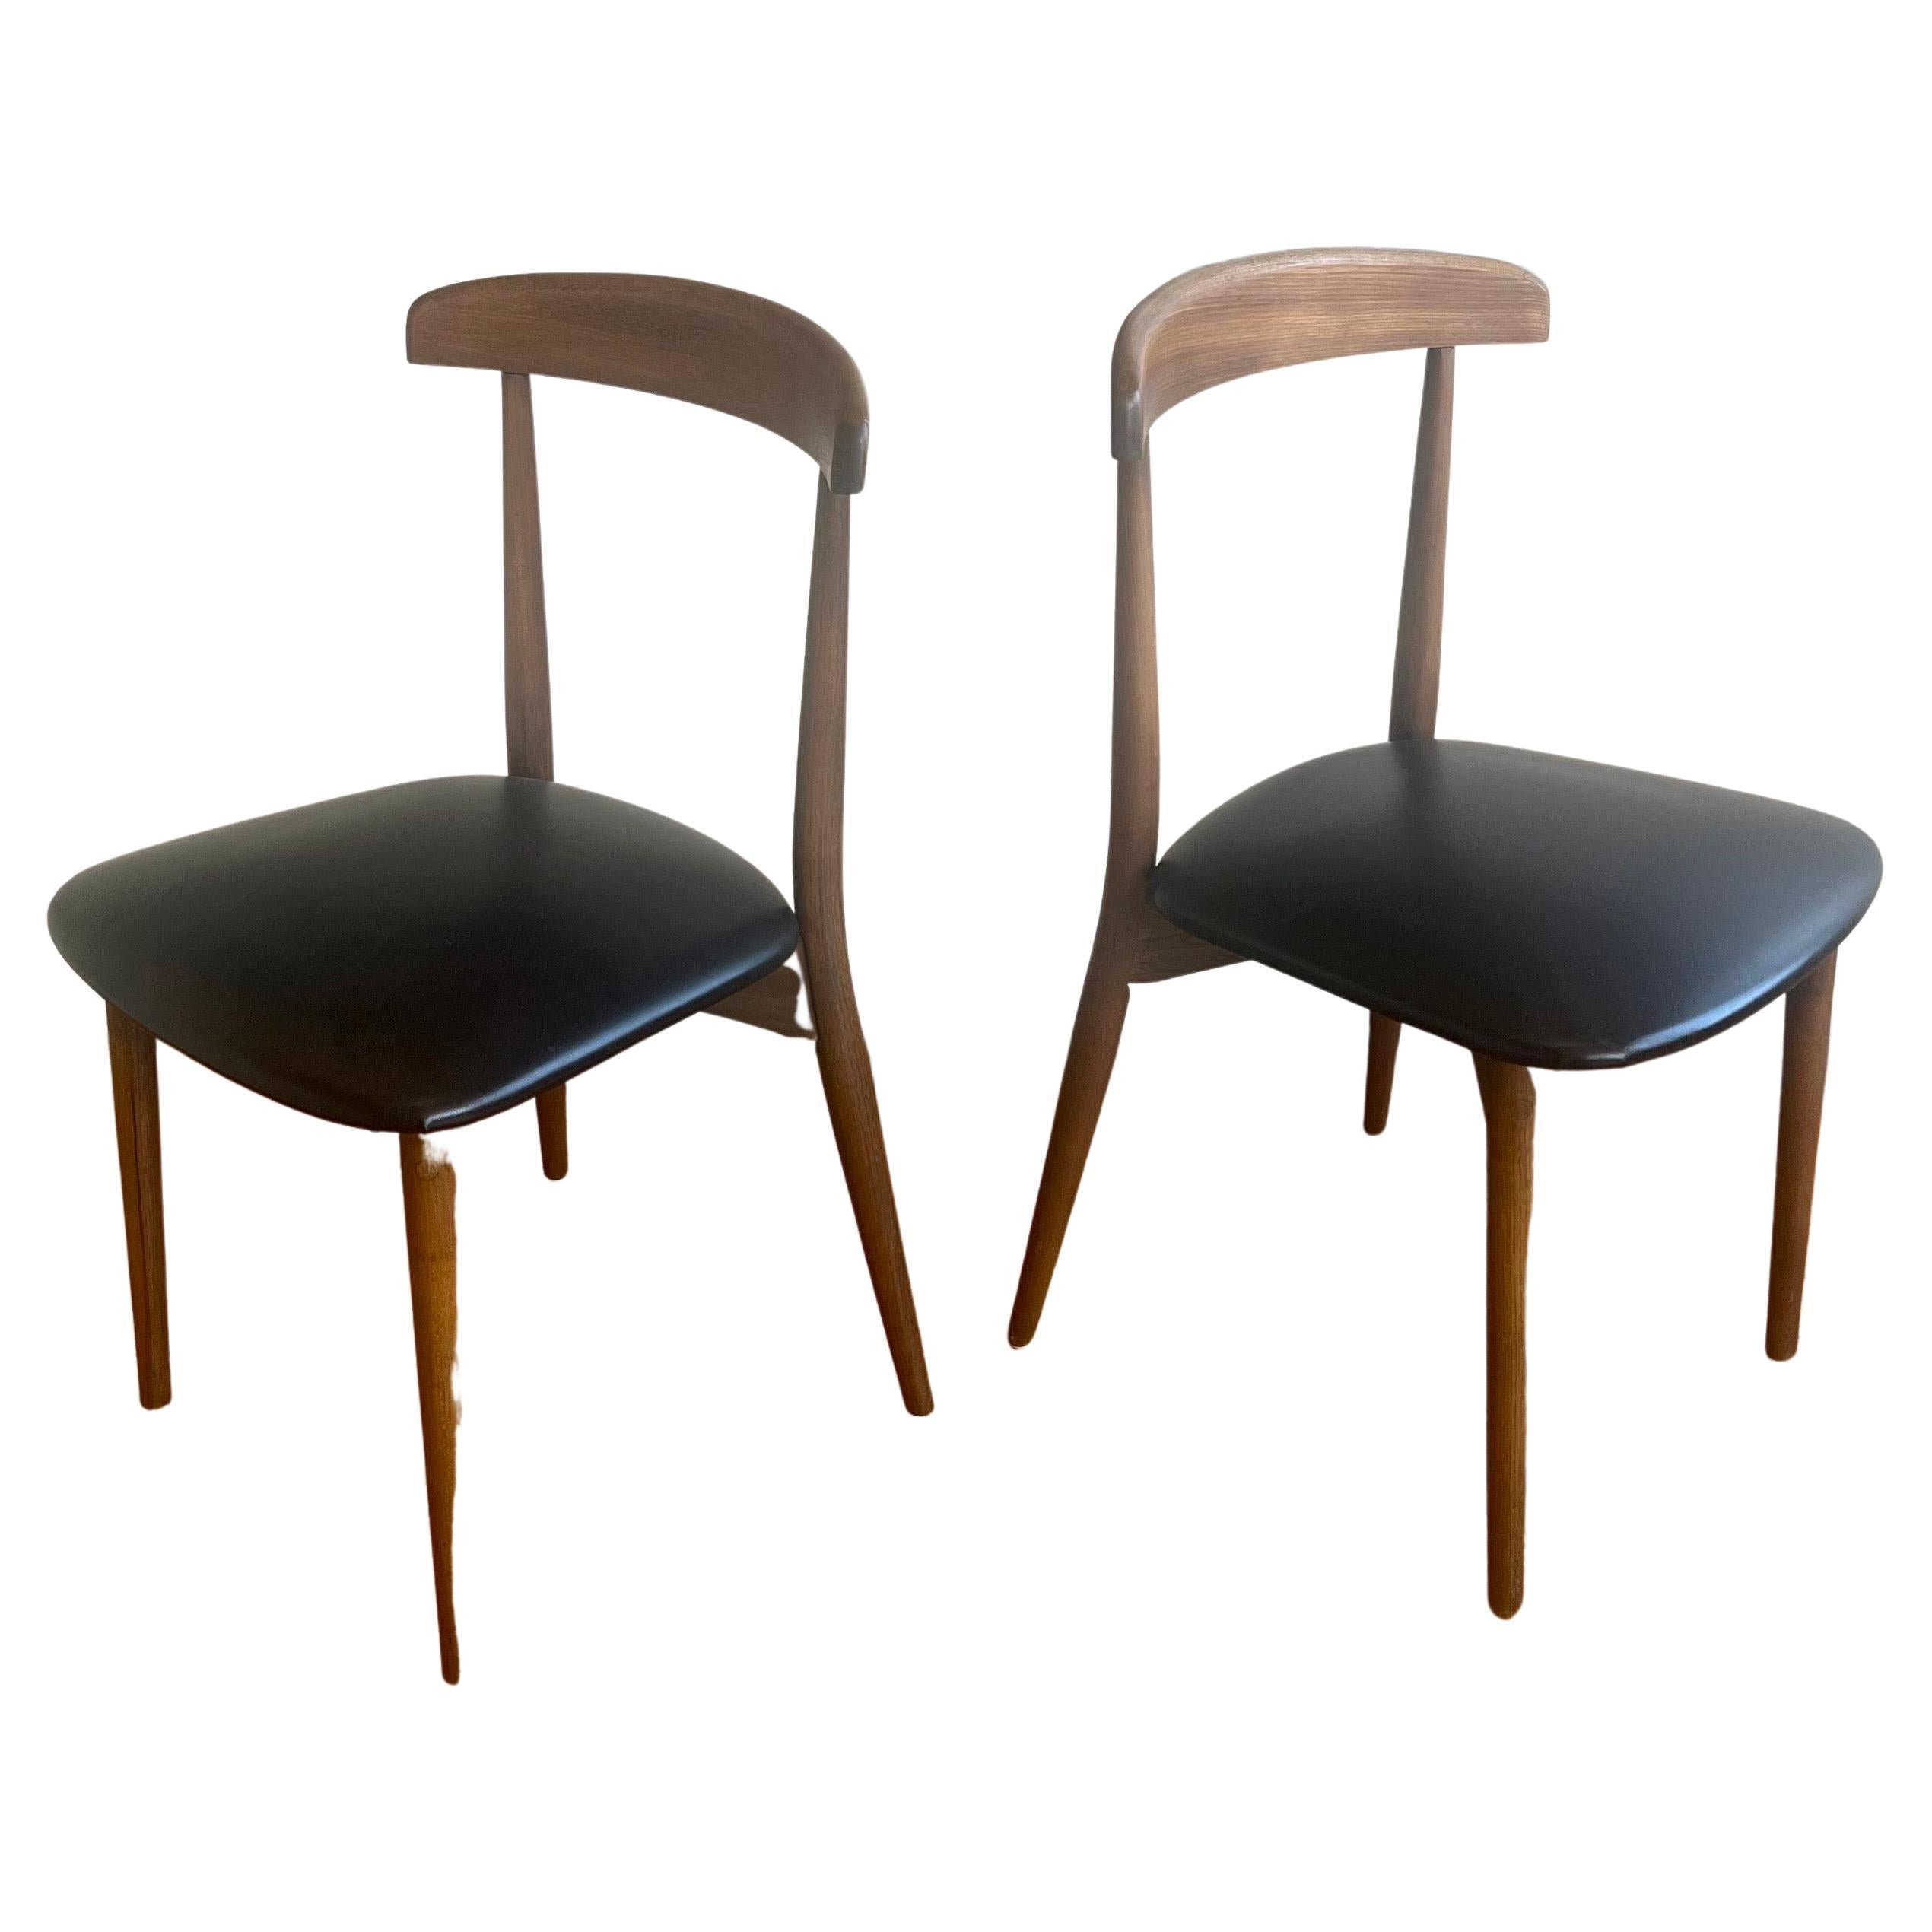 Elegantes einfaches Design Nussbaum Schreibtisch Esszimmer Stühle mit schönen Rückenlehne Design alle ursprünglichen Zustand sehr leicht verwenden ursprünglichen Stoff und Zustand, solide und robust schöne Handwerkskunst, haben wir 3 zur Verfügung